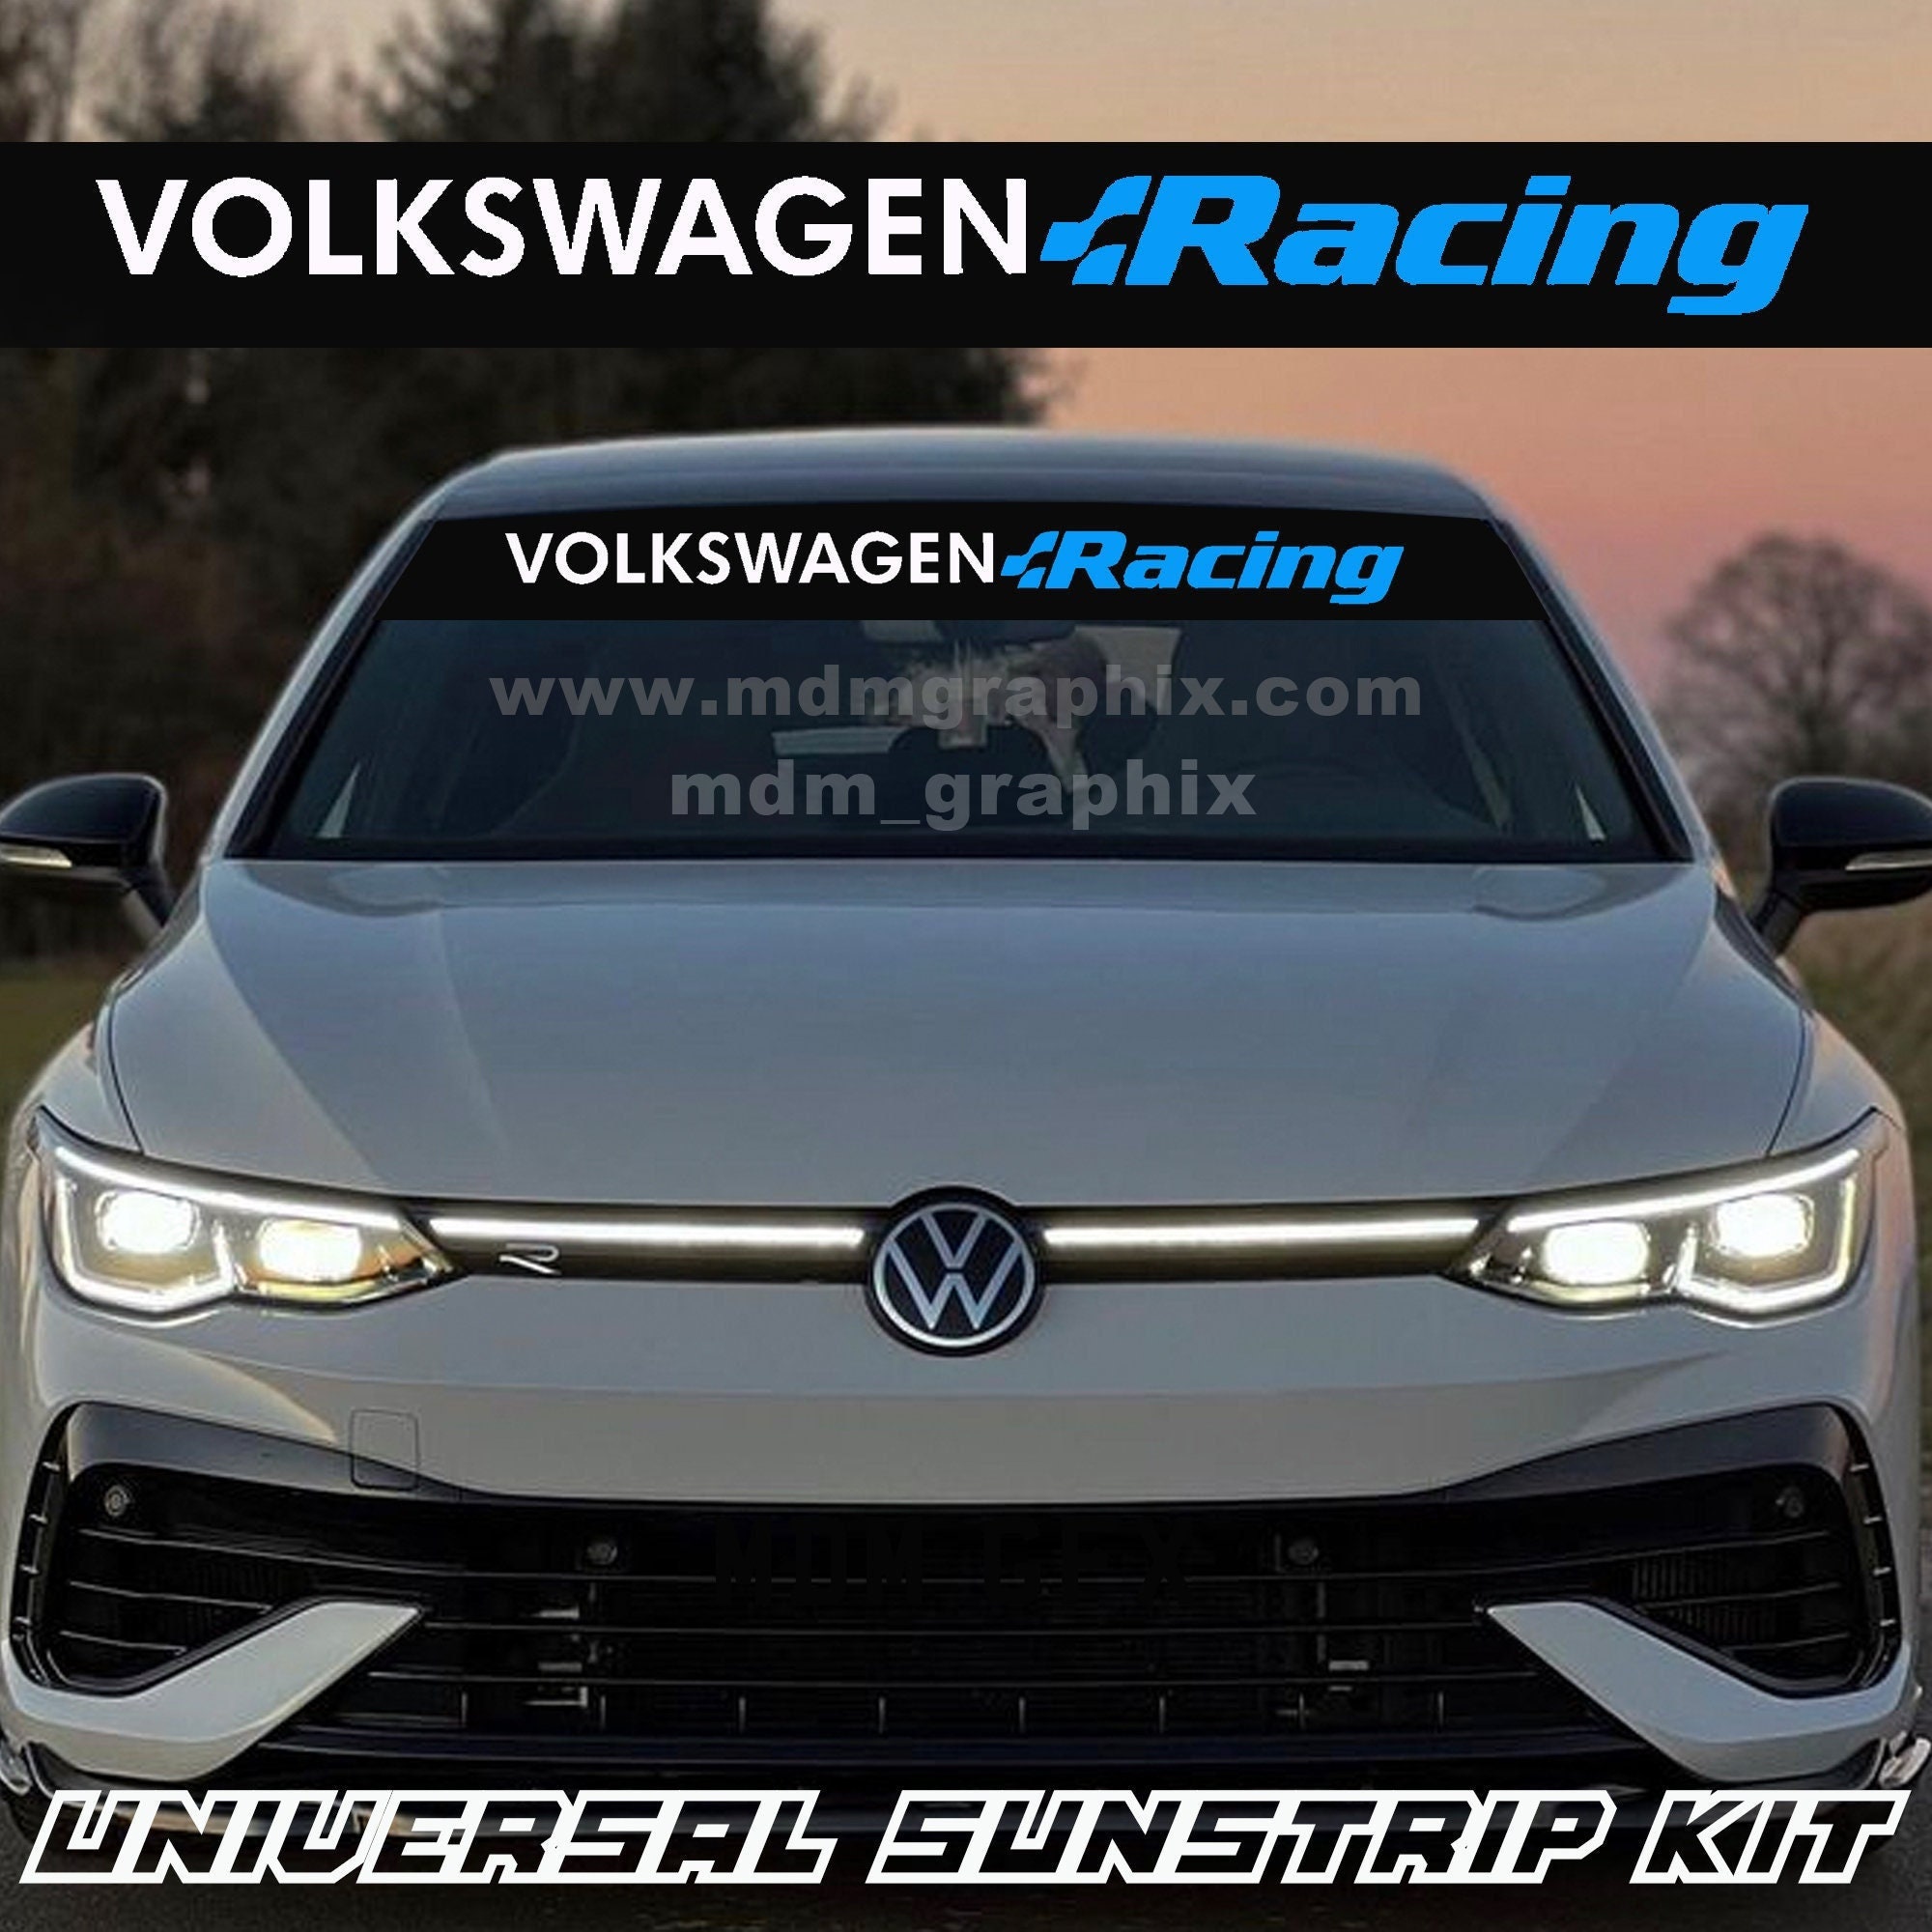 Volkswagen Car Decal -  UK